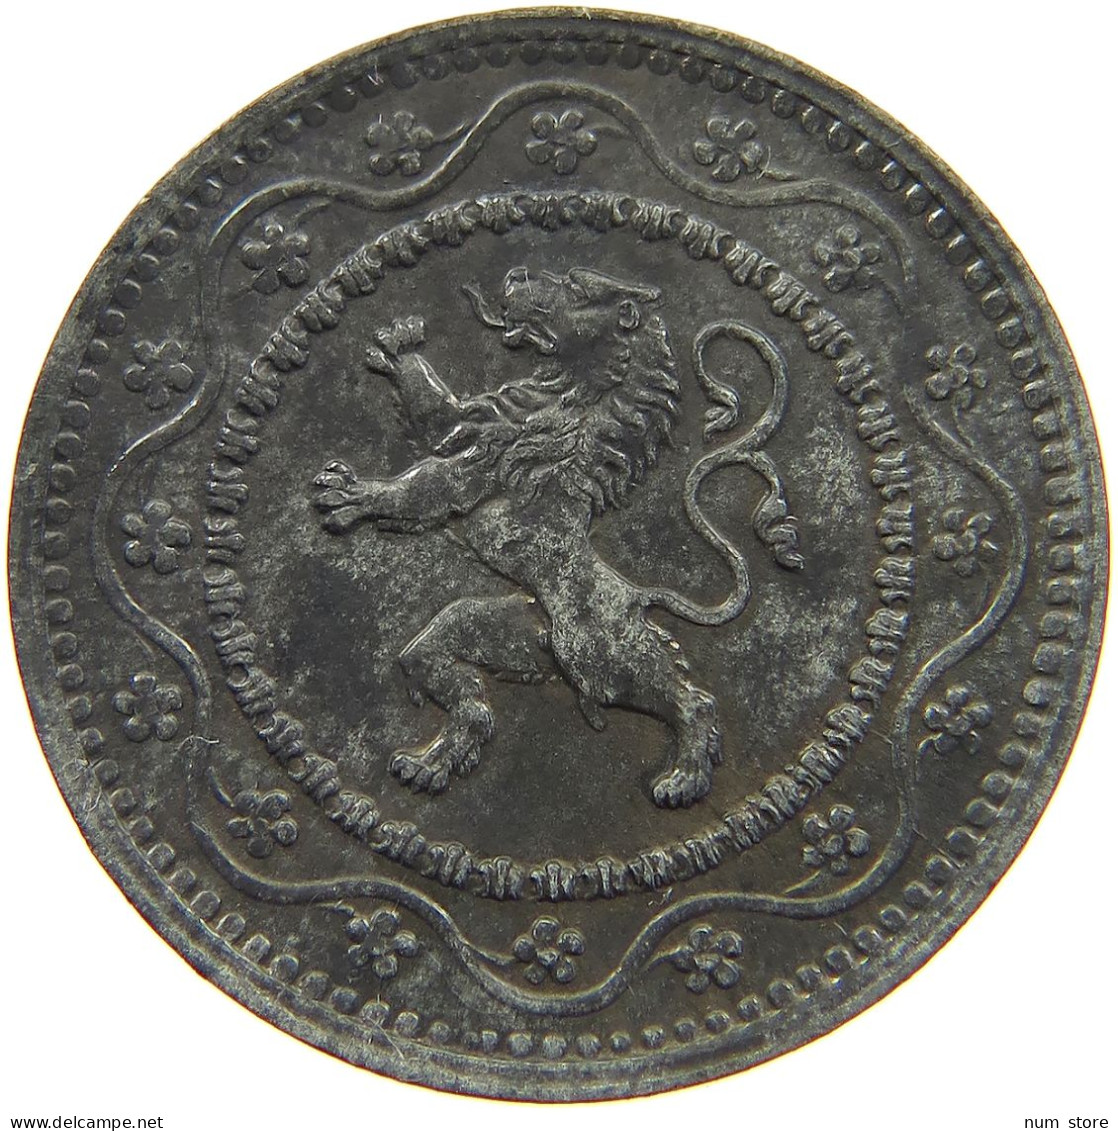 BELGIUM 10 CENTIMES 1916 #a005 0869 - 10 Cents